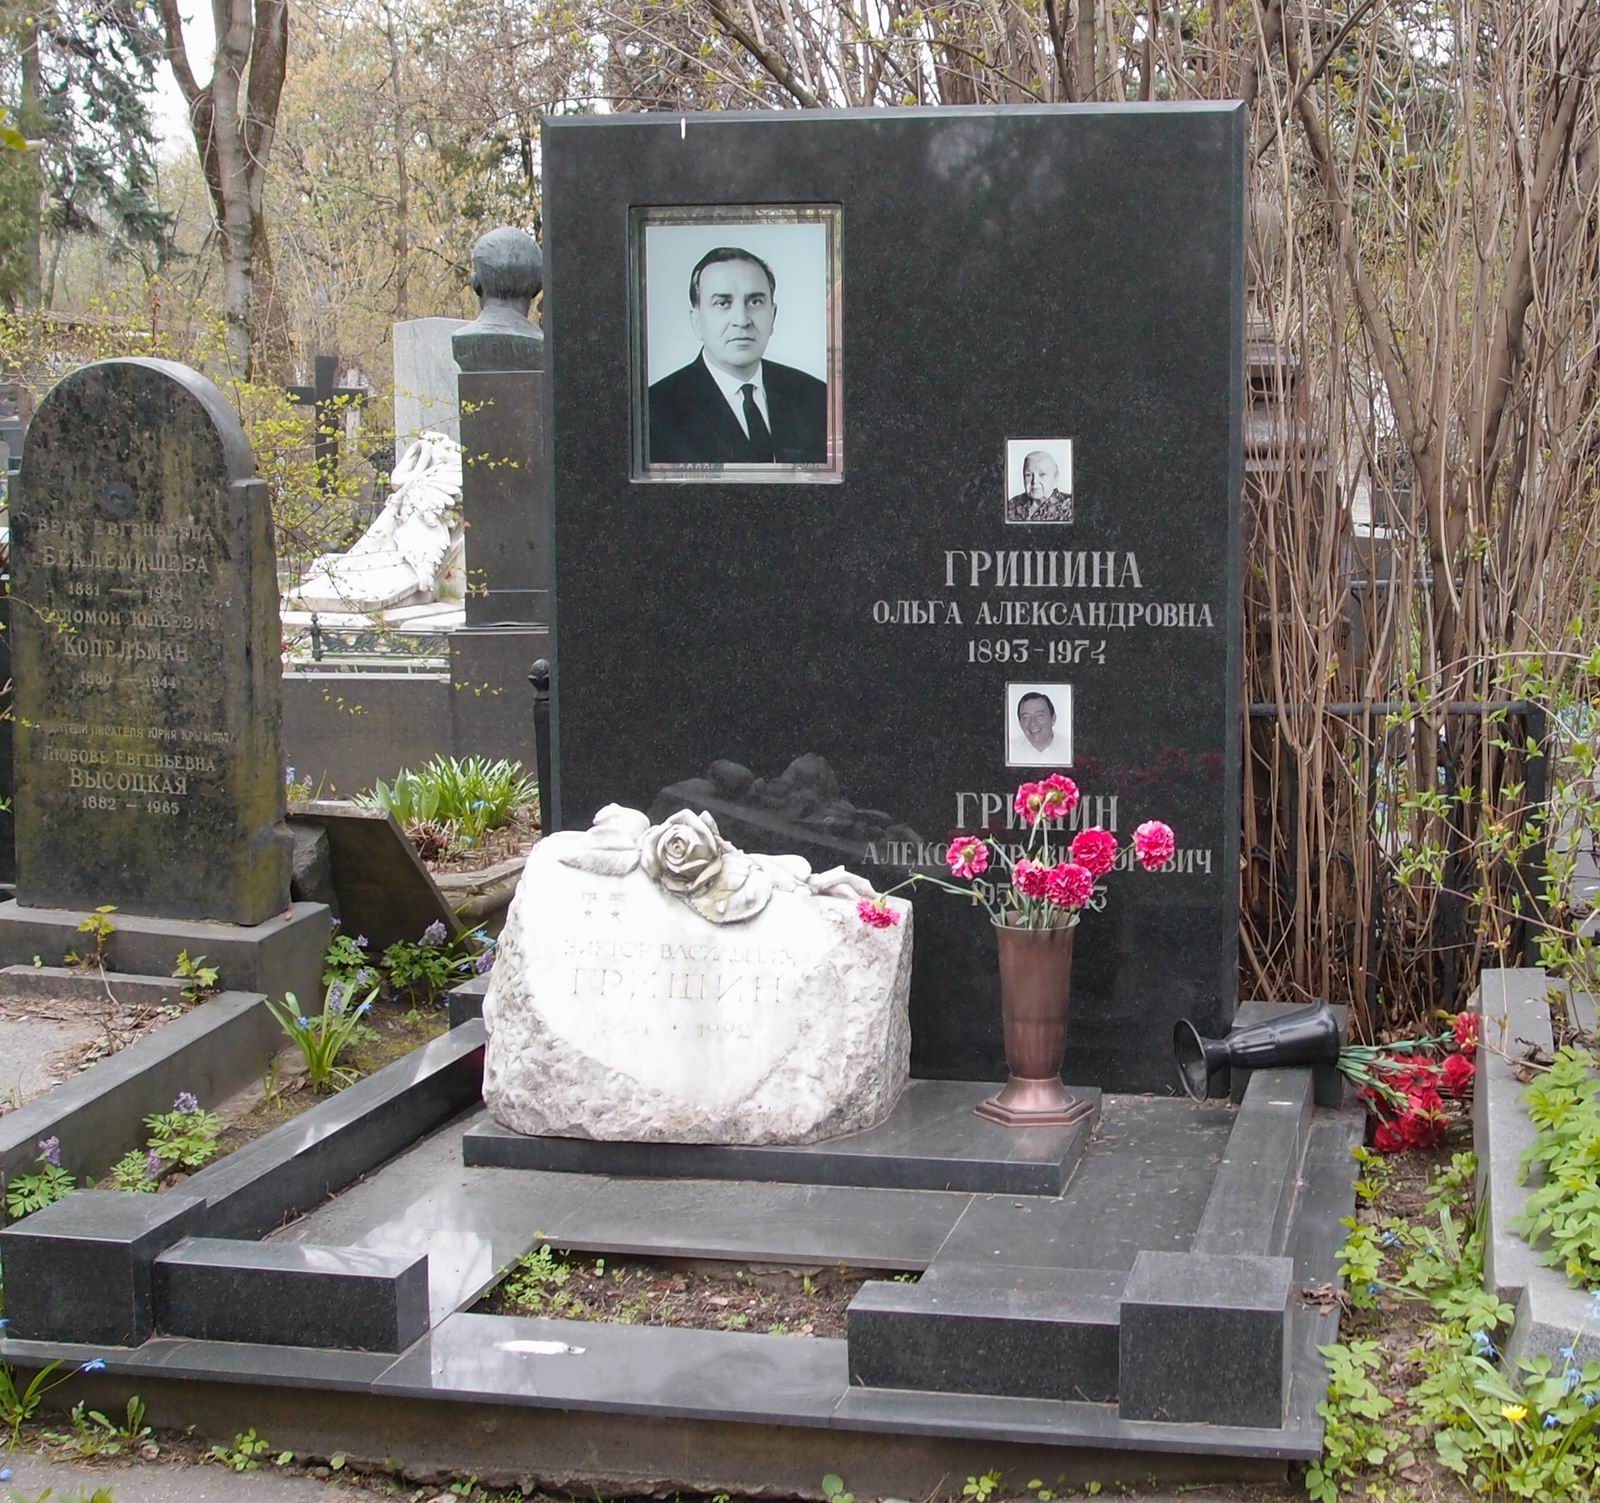 Памятник на могиле Гришина В.В. (1914-1992), на Новодевичьем кладбище (2-25-7). Нажмите левую кнопку мыши чтобы увидеть предыдущий вариант памятника.